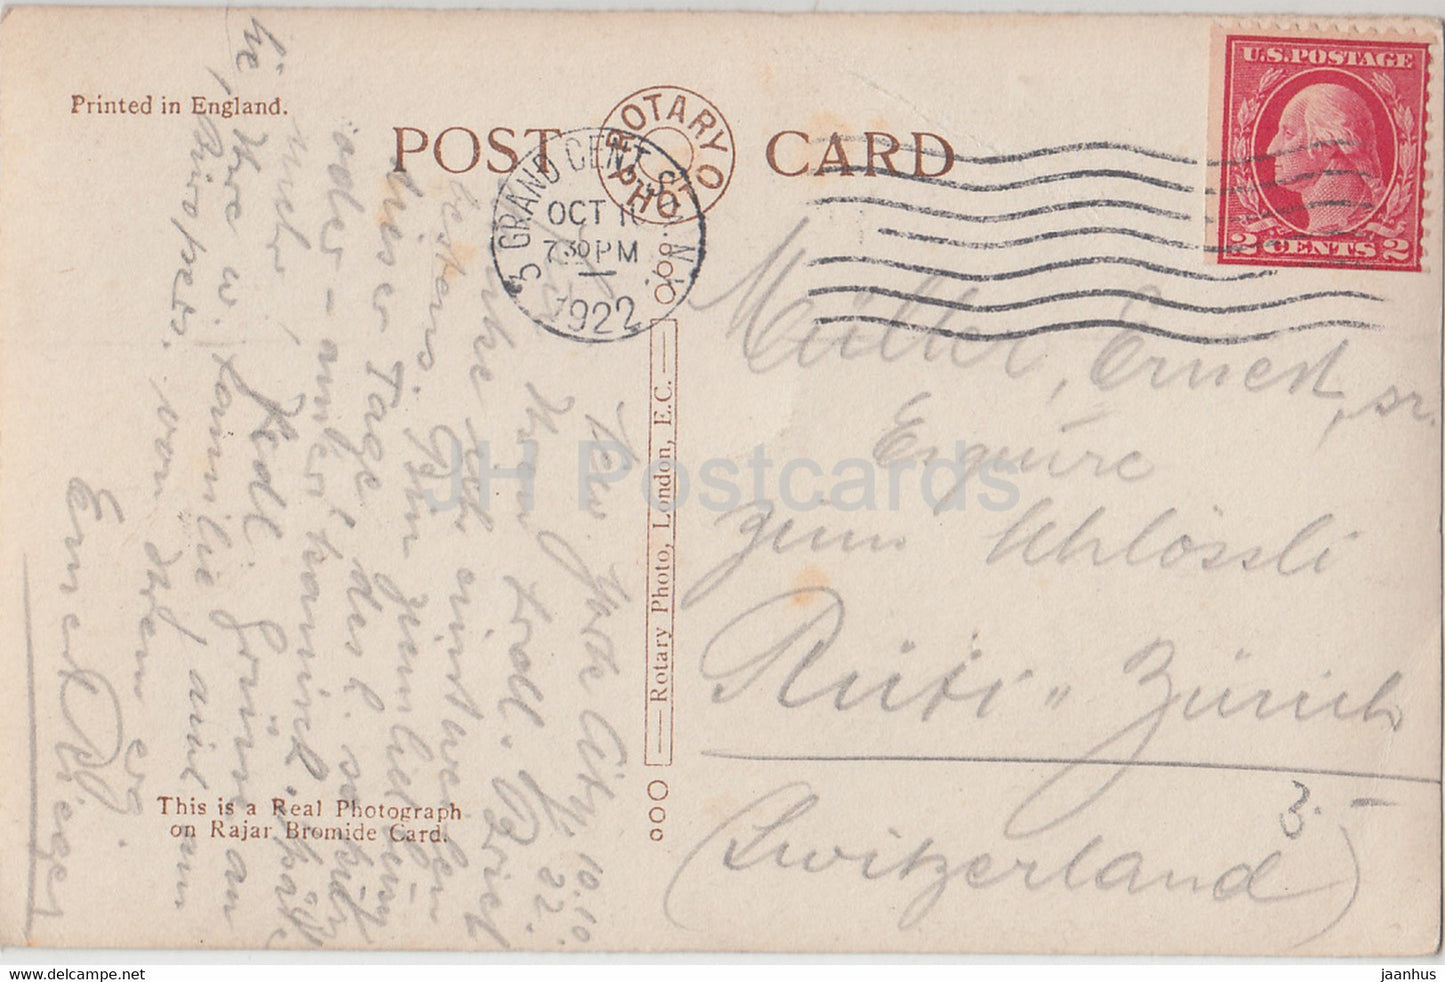 New York City - La nouvelle gare Grand Central - carte postale ancienne - 1922 - États-Unis - USA - utilisé